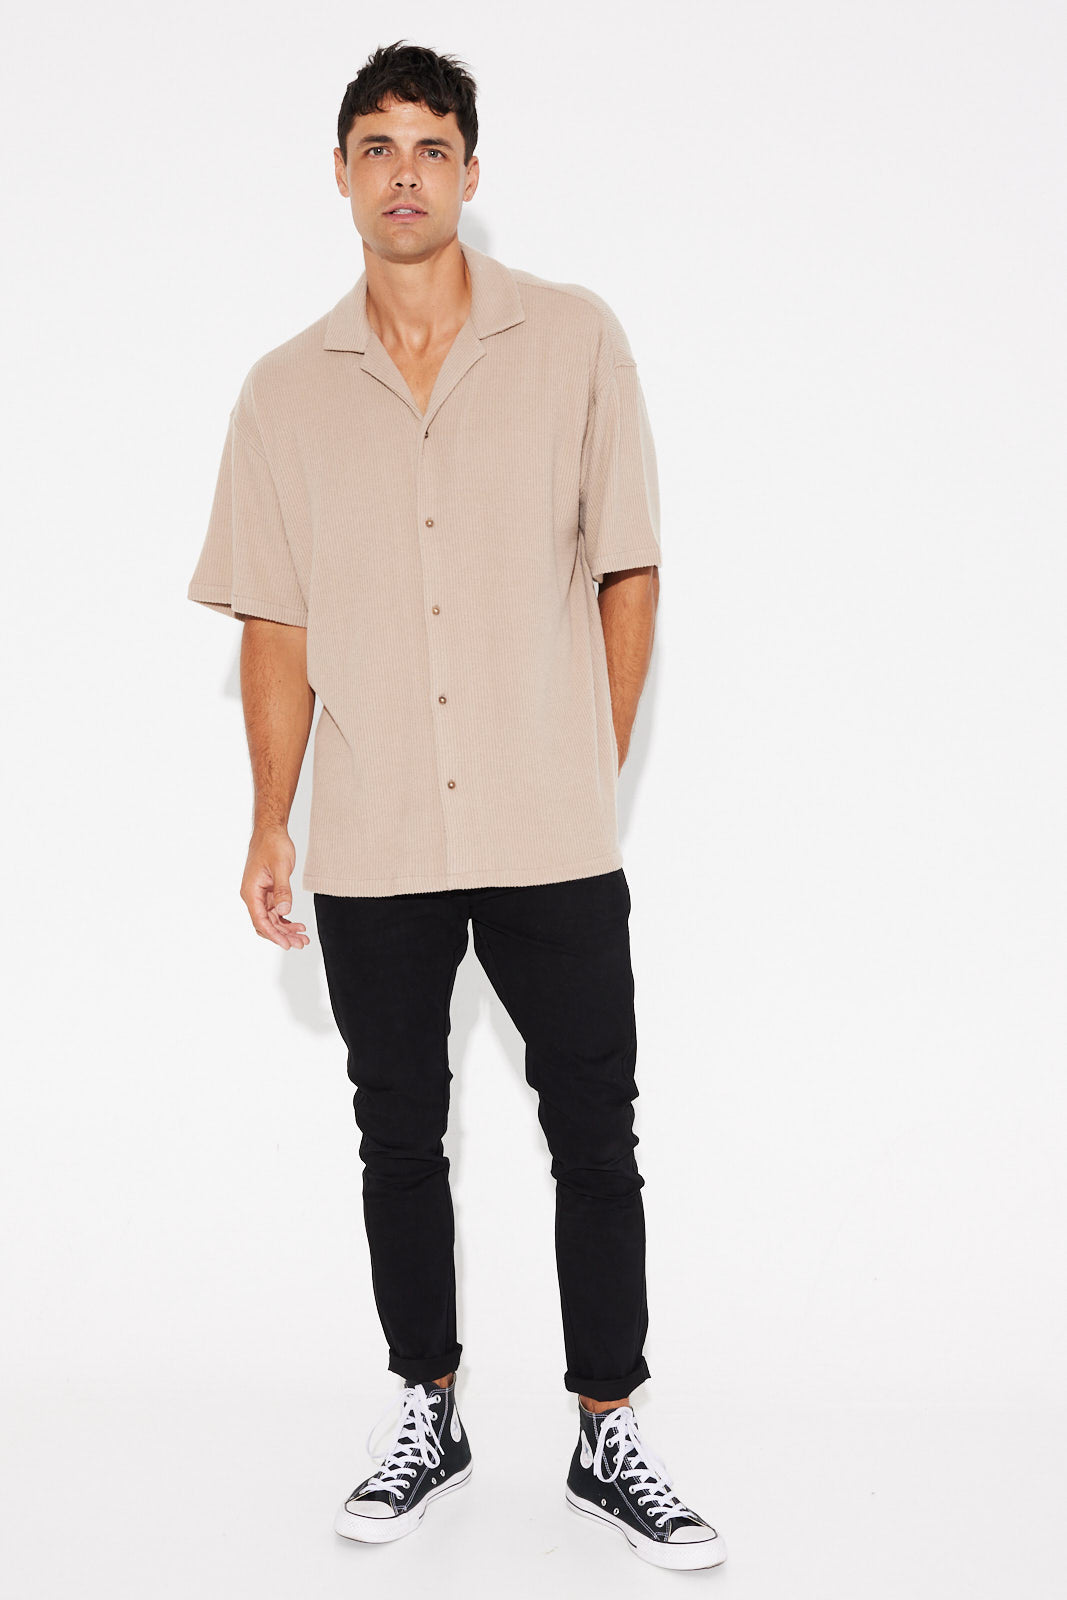 Cord Knit Short Sleeve Shirt Light Brown - FINAL SALE